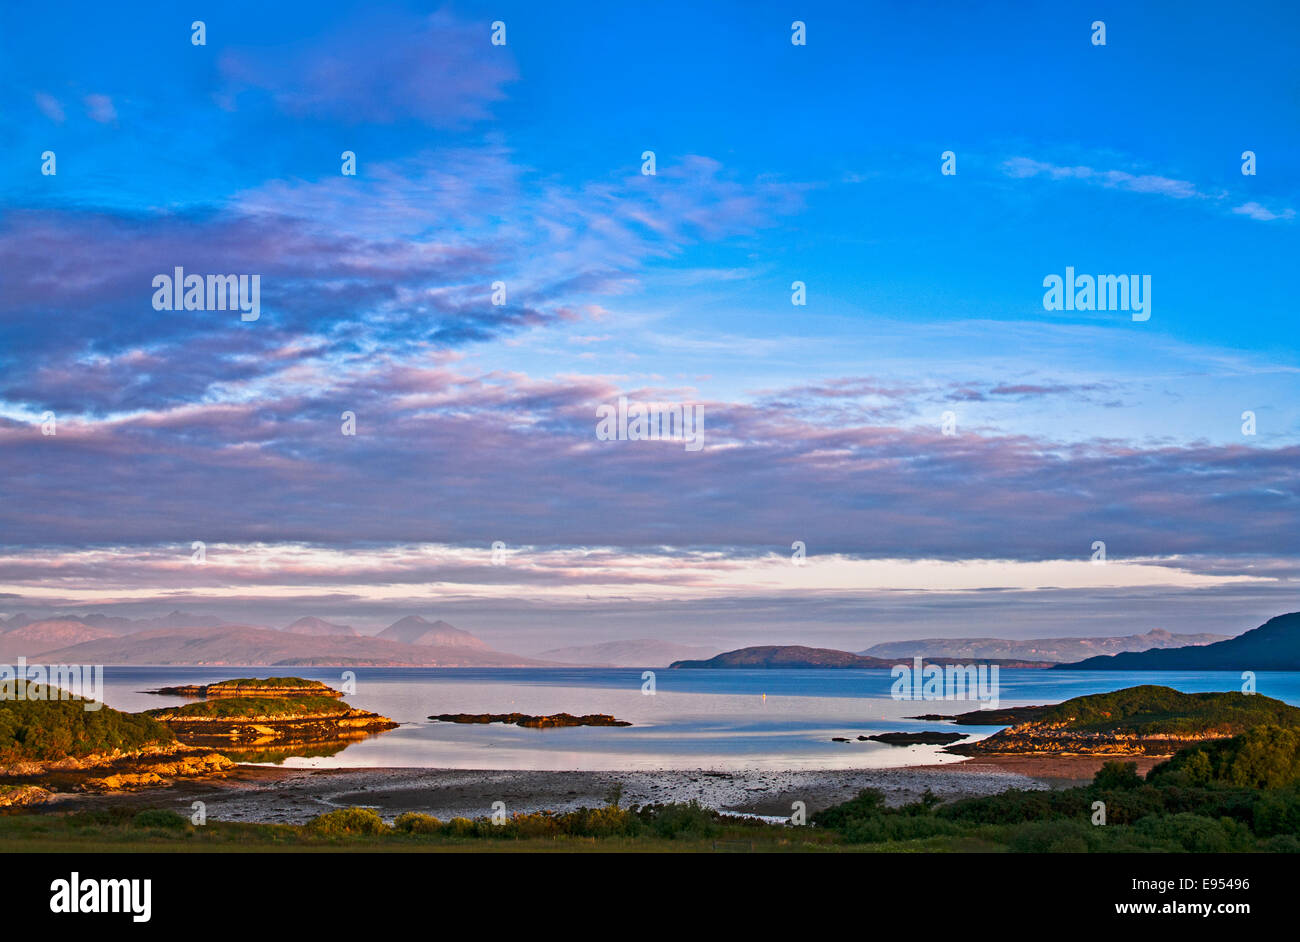 Amanecer brumoso en la Isla de Skye y Scalpay, visto desde una bahía en Loch Carron, cerca Plockton, Wester Ross, Highlands, Escocia, Reino Unido Foto de stock